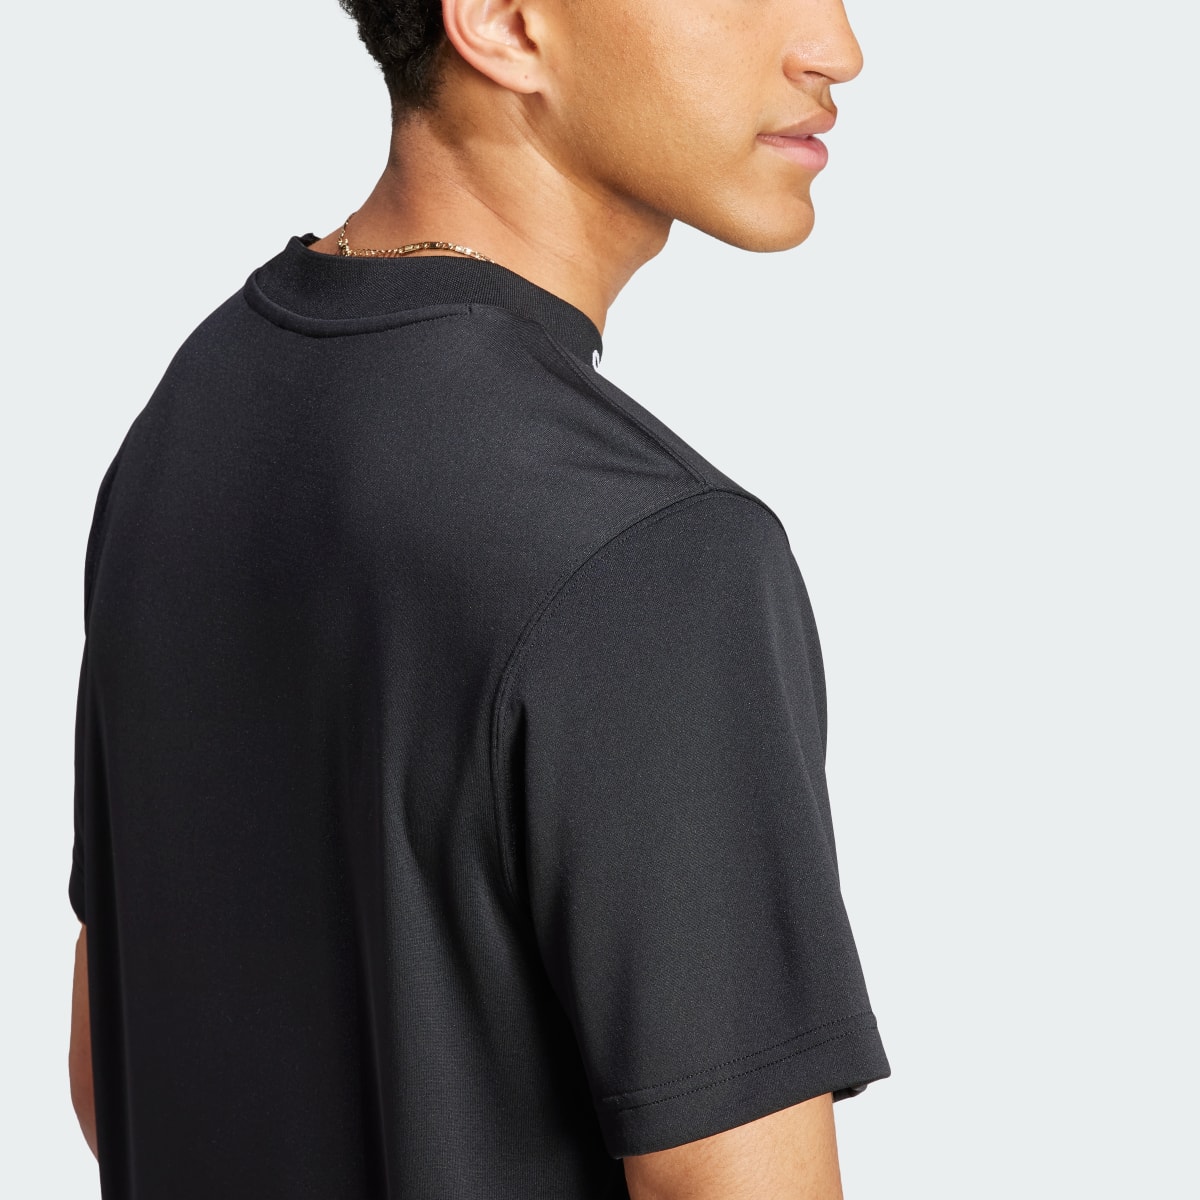 Adidas Camiseta Mesh-Back. 7